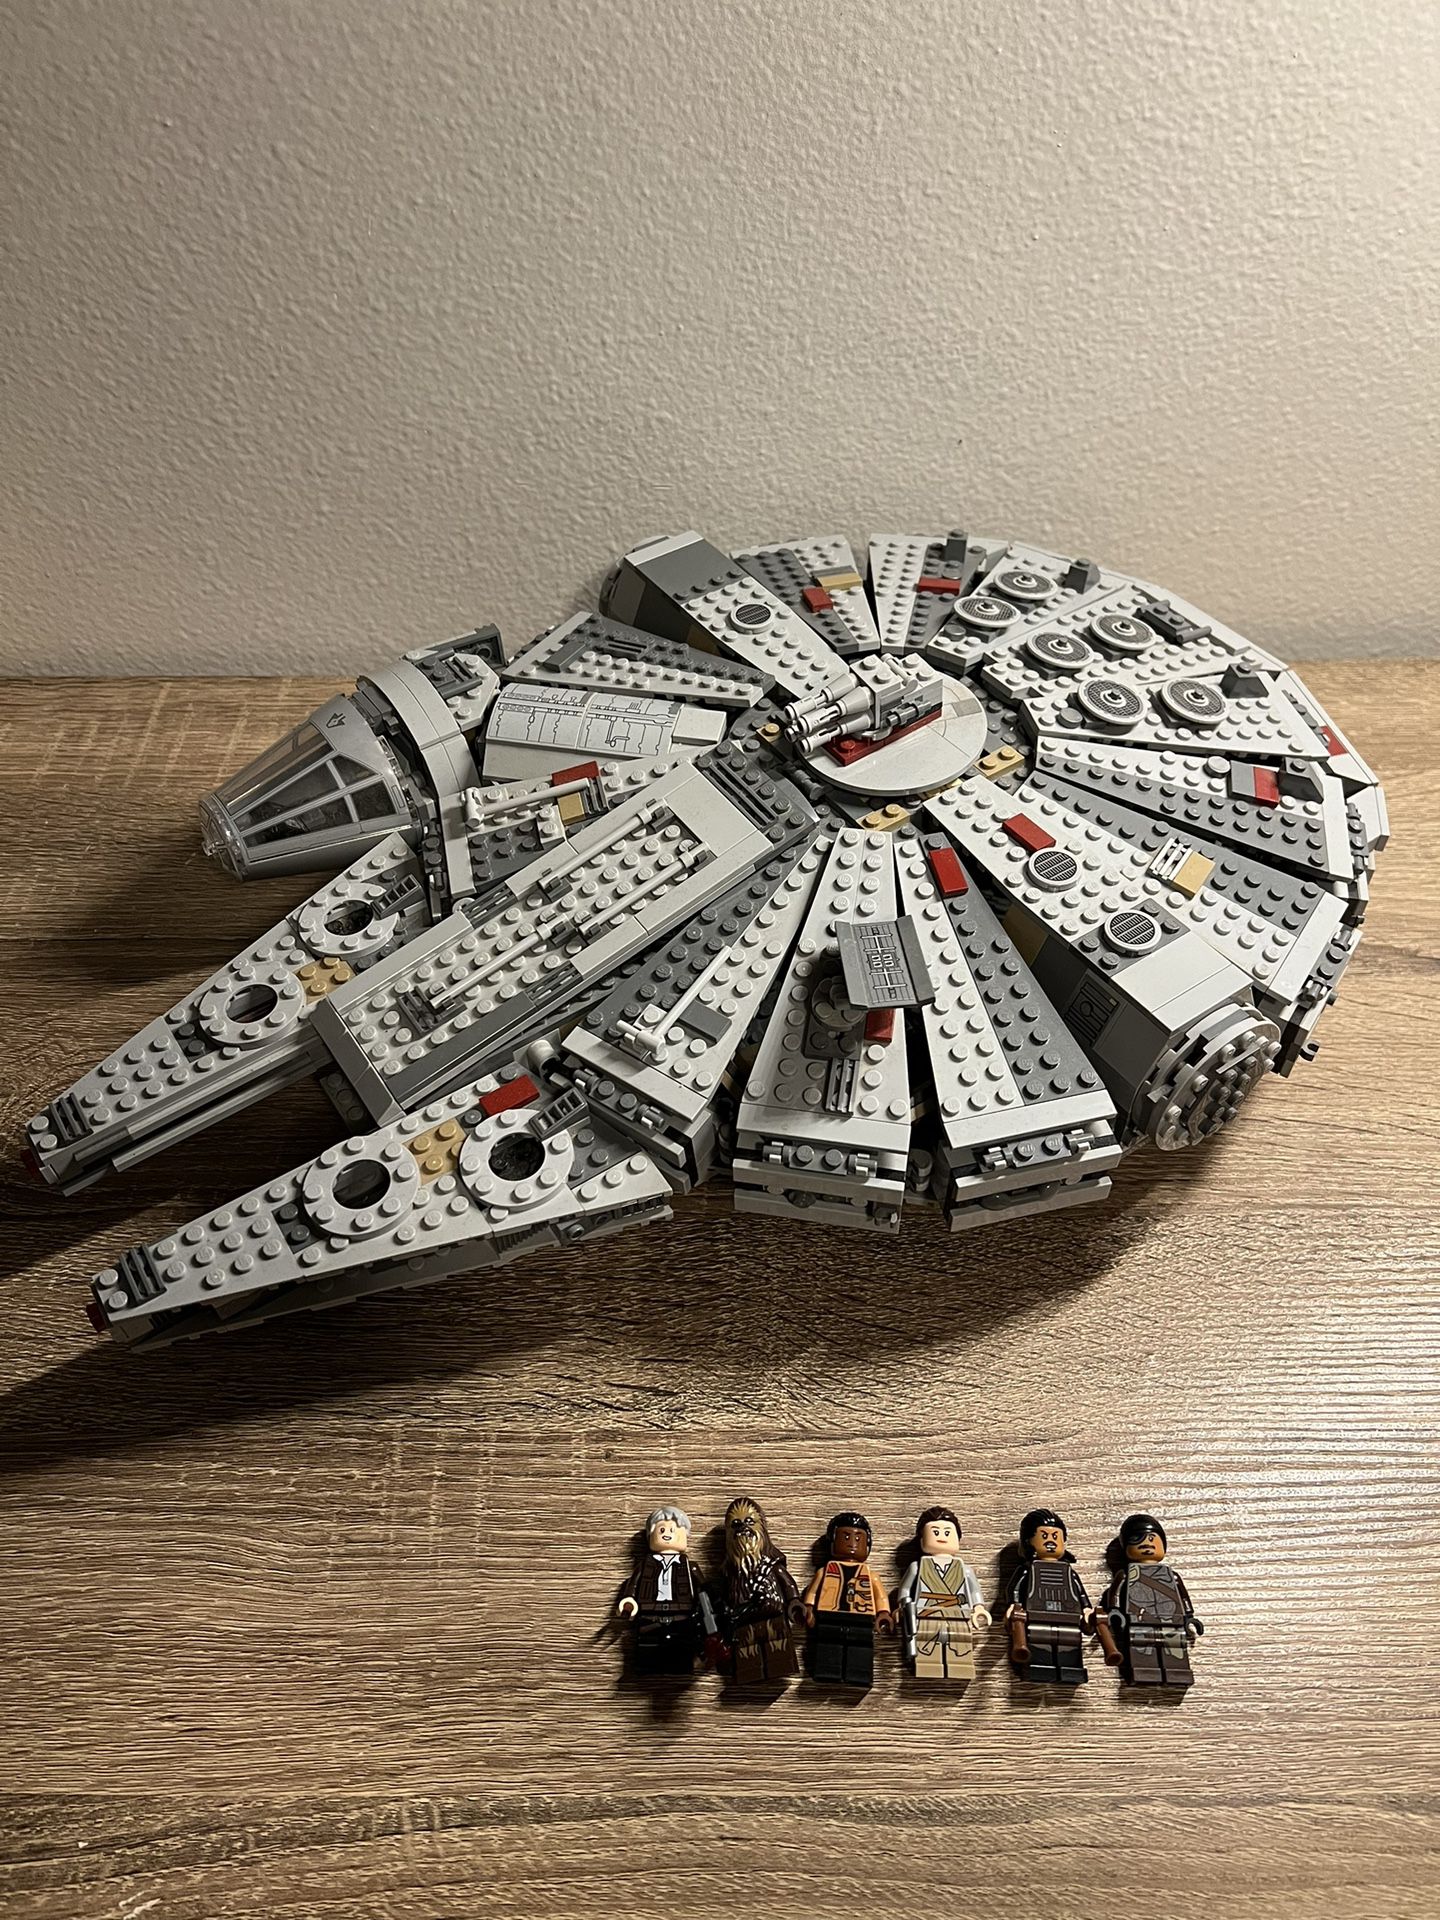 Lego Star Wars 2015 Millennium Falcon